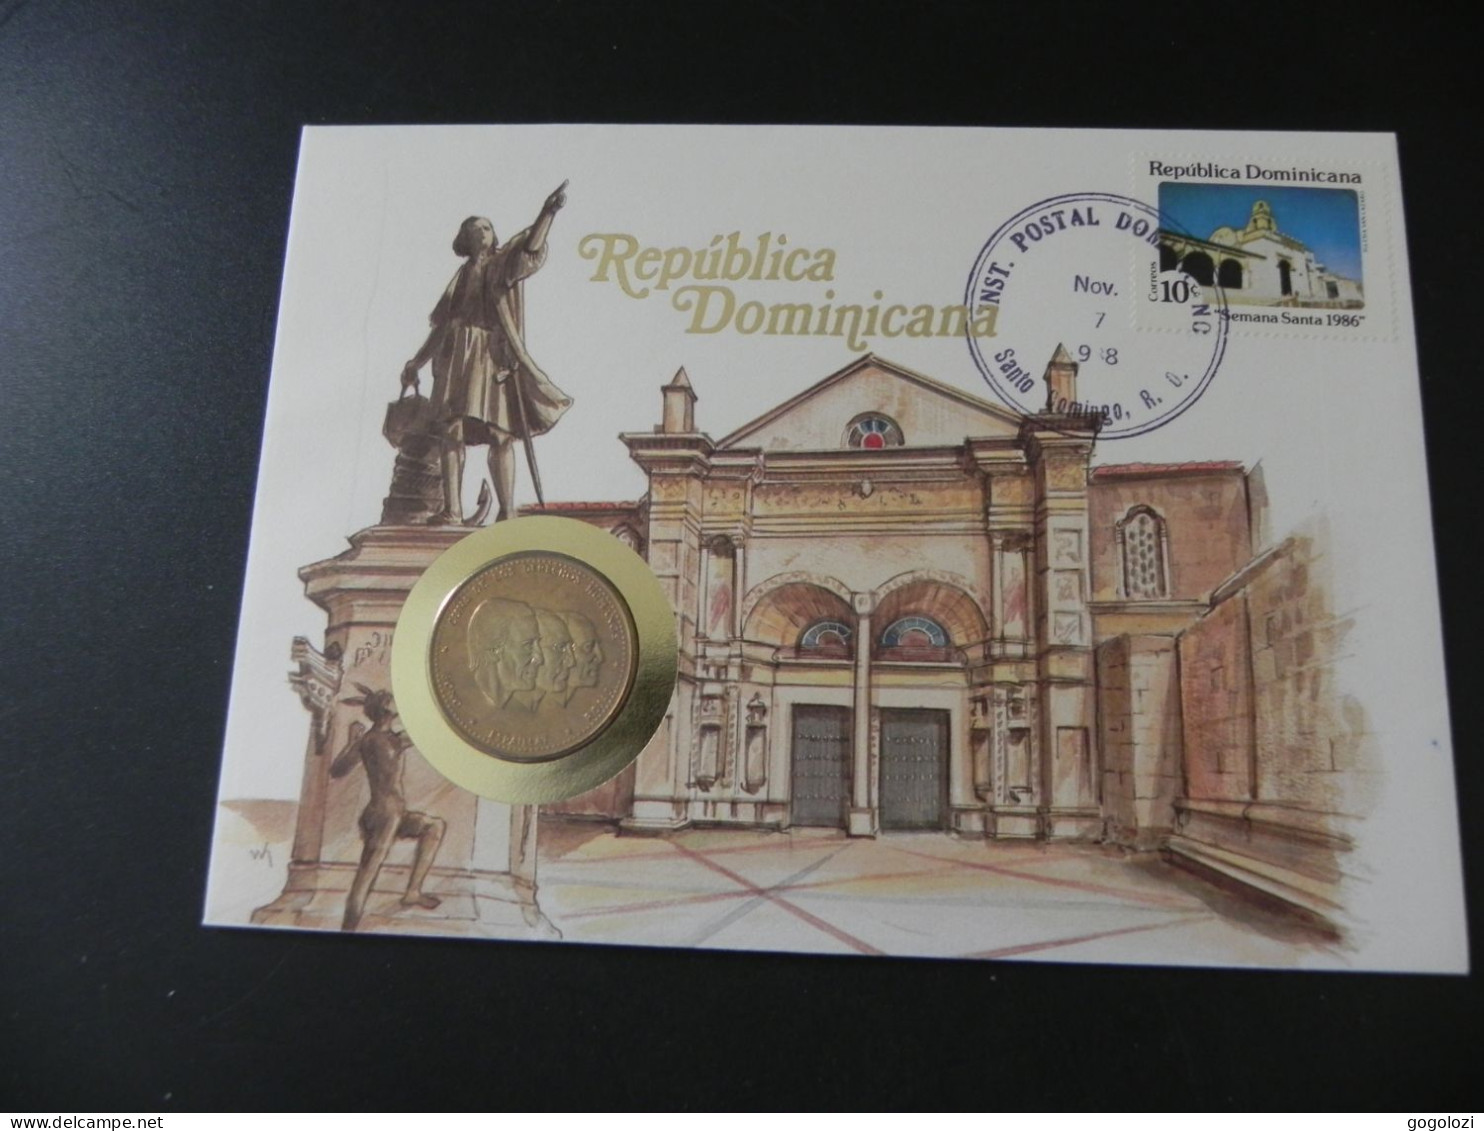 Dominican Republic 1/2 Peso 1983 - Cuna De Los Derechos Humanos - Bono Espaillat Rojas - Numis Letter 1988 - Dominicaine